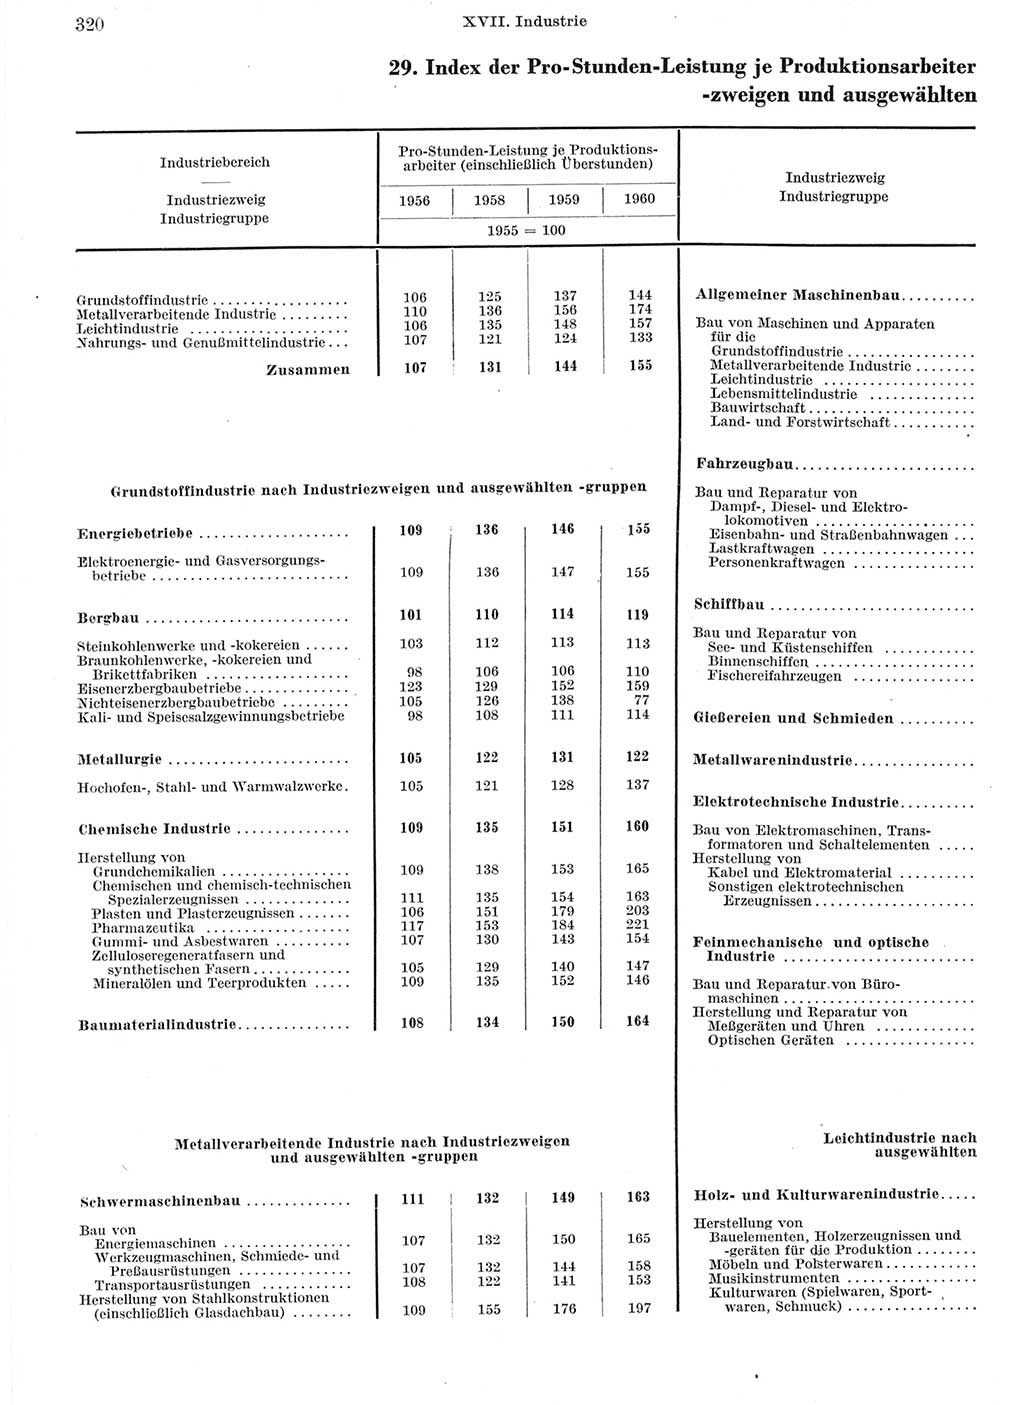 Statistisches Jahrbuch der Deutschen Demokratischen Republik (DDR) 1962, Seite 320 (Stat. Jb. DDR 1962, S. 320)